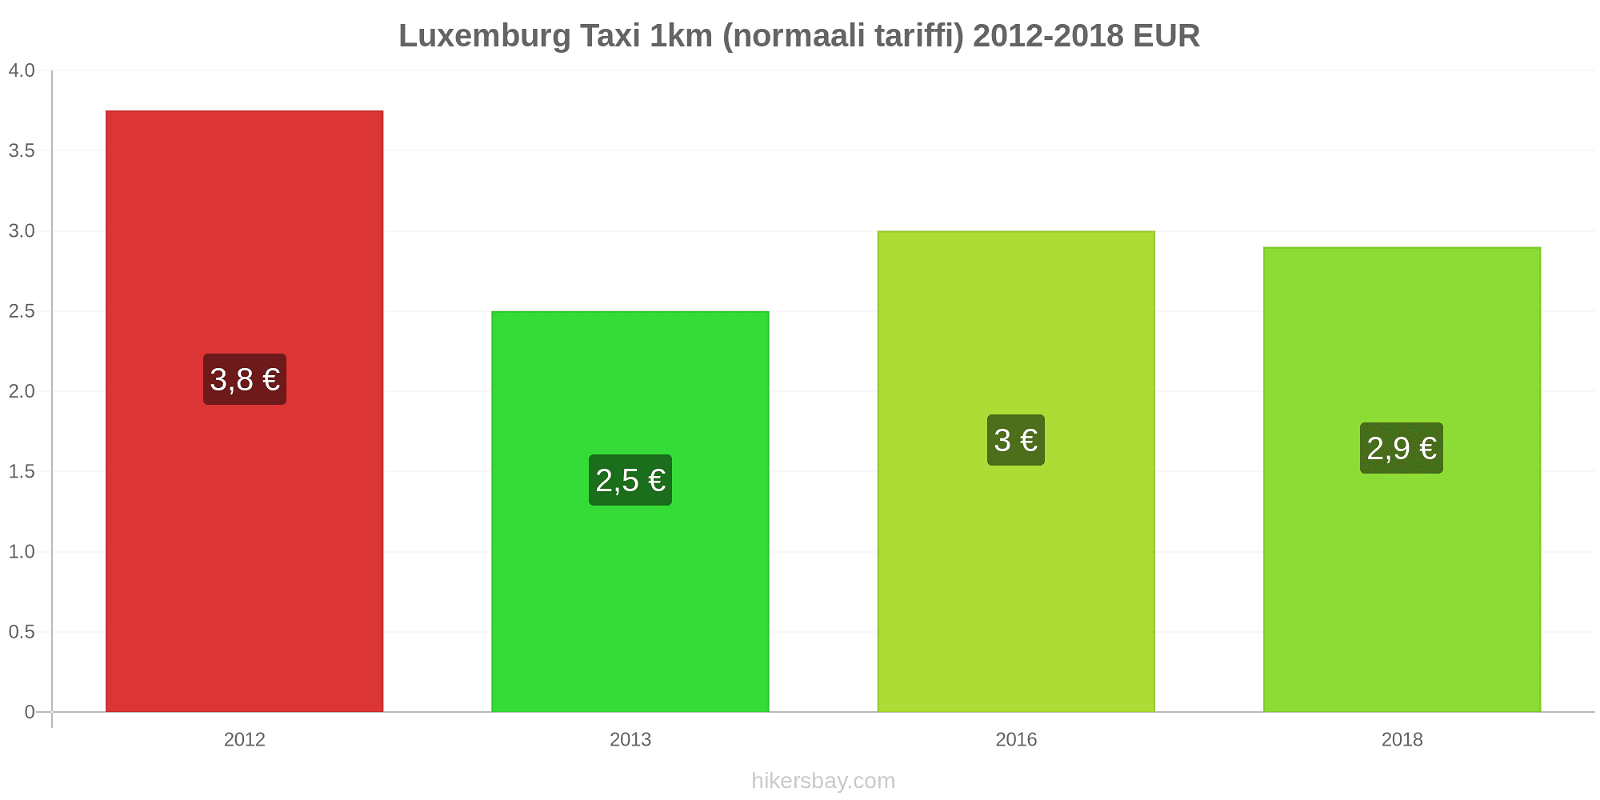 Luxemburg hintojen muutokset Taxi 1km (normaali tariffi) hikersbay.com